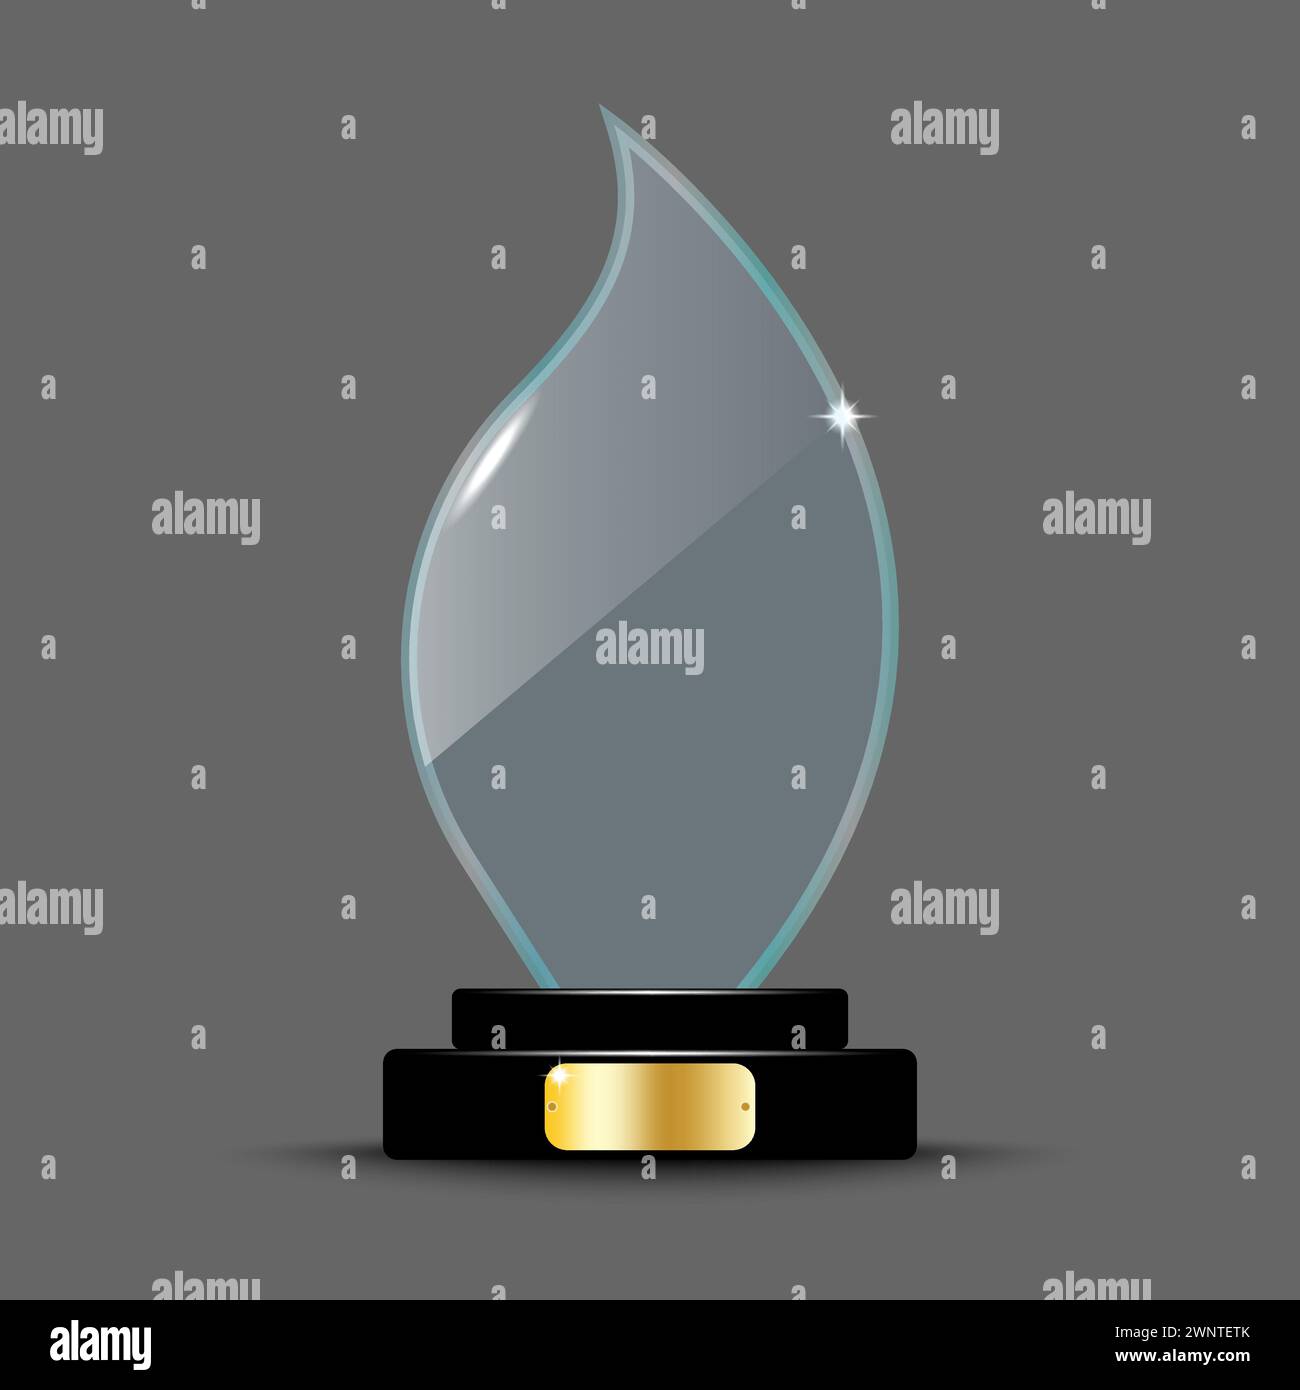 Design realistico del layout dei premi. Trofeo di vetro sotto forma di fiamma. fiamma in cristallo acrilico 3d. Illustrazione vettoriale. immagine stock. EPS 10. Illustrazione Vettoriale